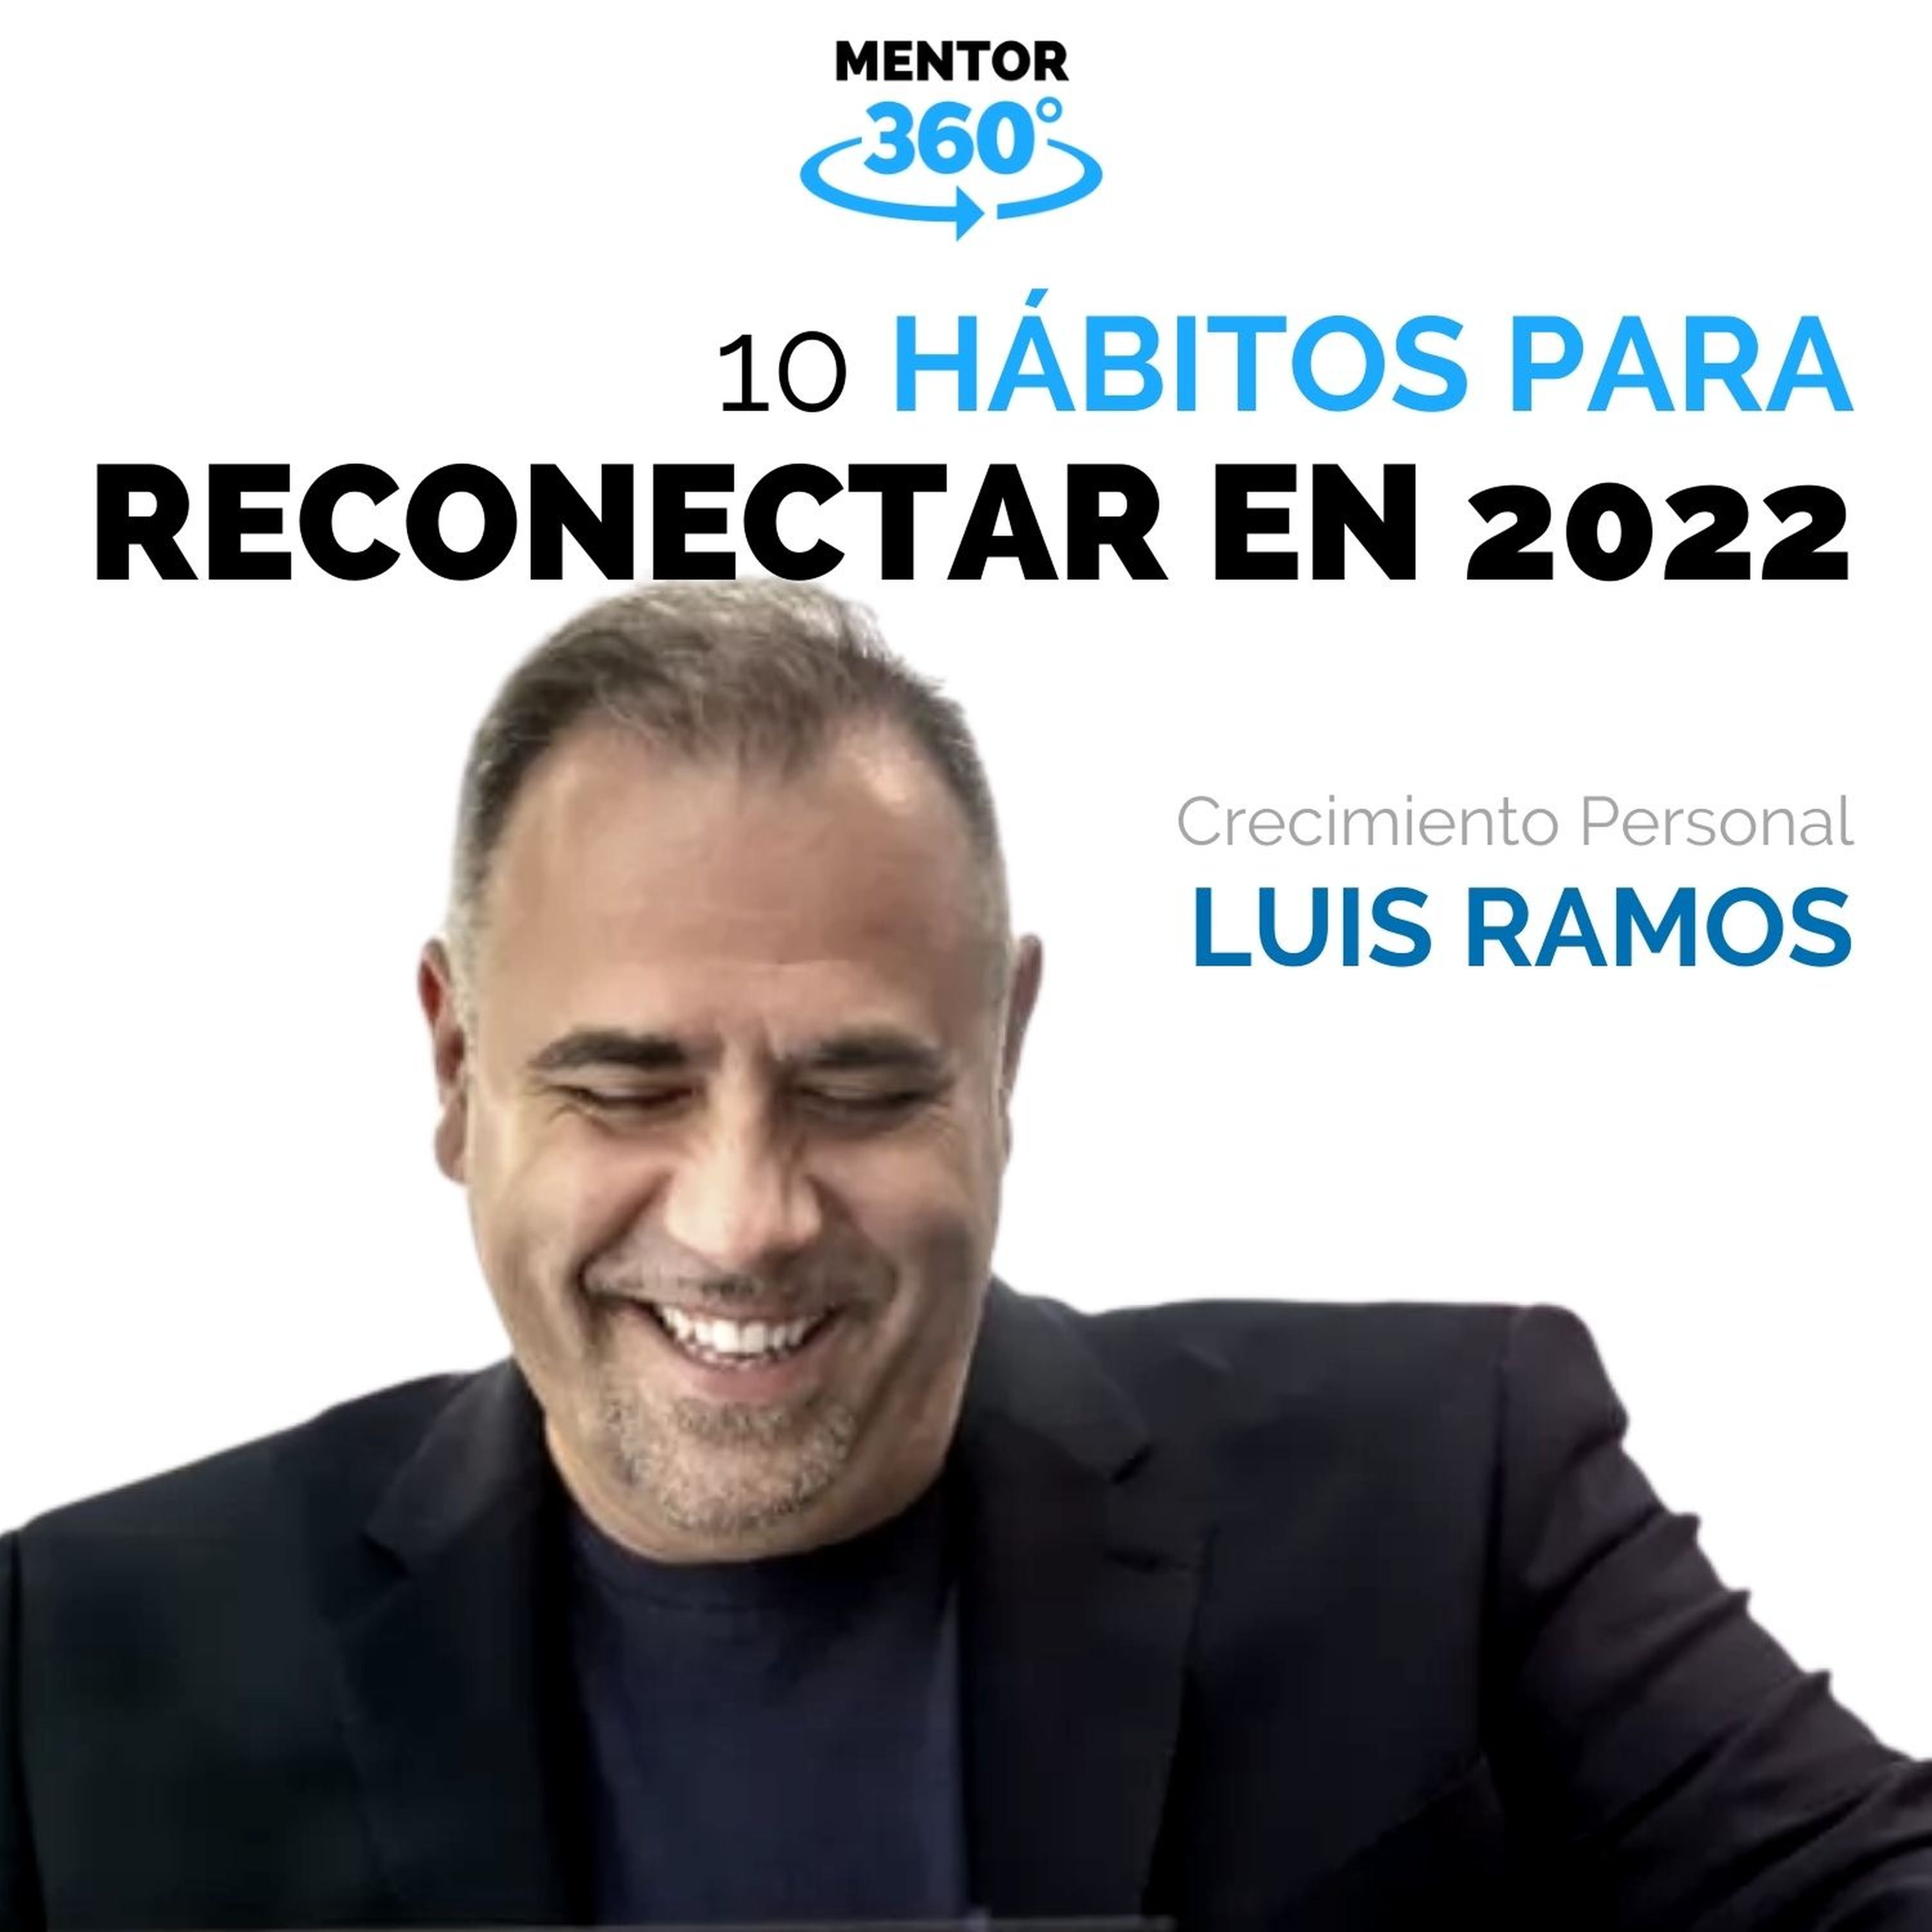 10 Hábitos para Reconectar este 2022 - Luis Ramos - Crecimiento Personal - MENTOR360